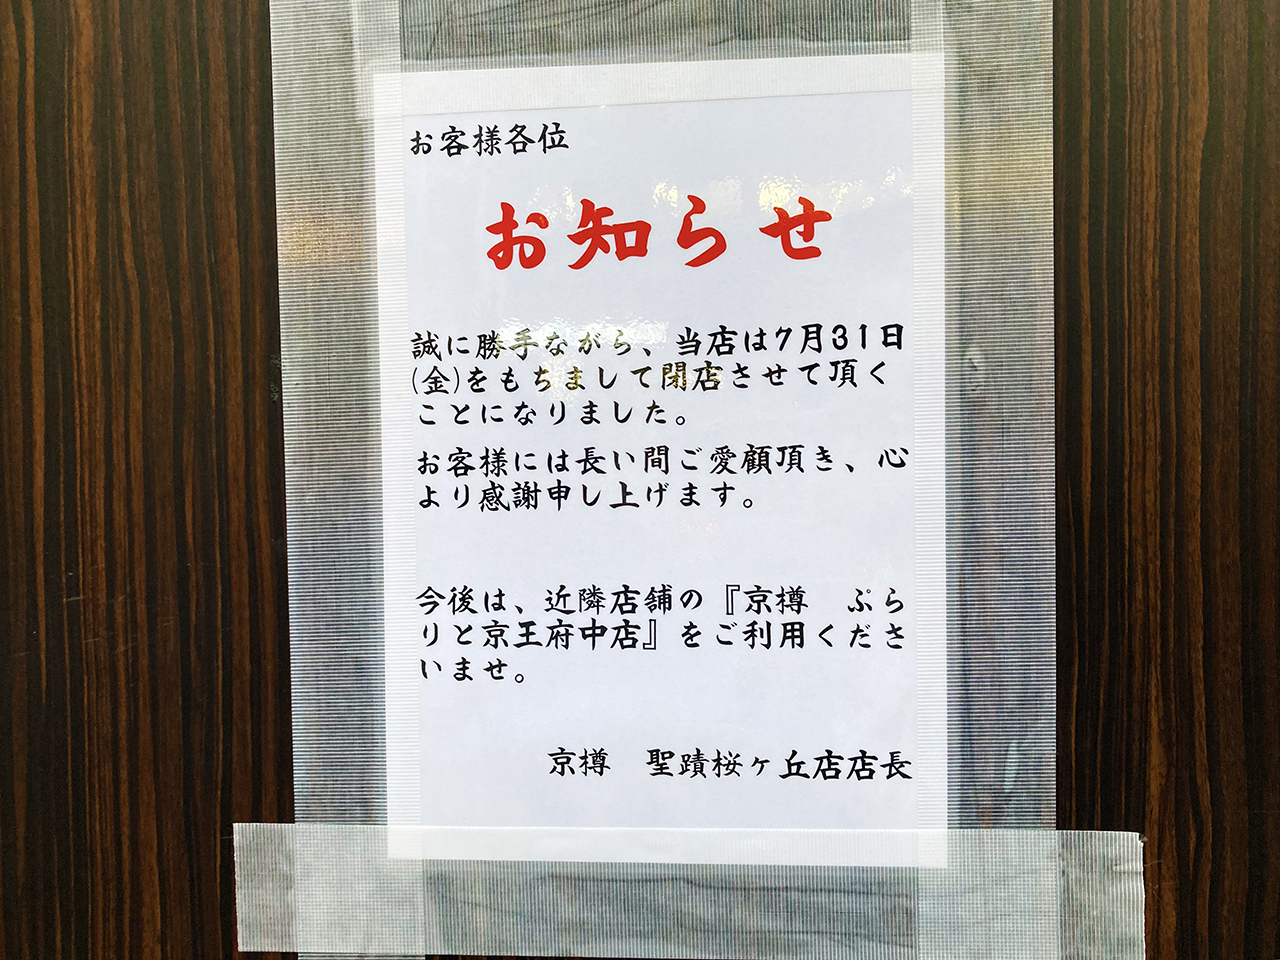 すし三崎港 京樽 聖蹟桜ヶ丘店が7月末に閉店